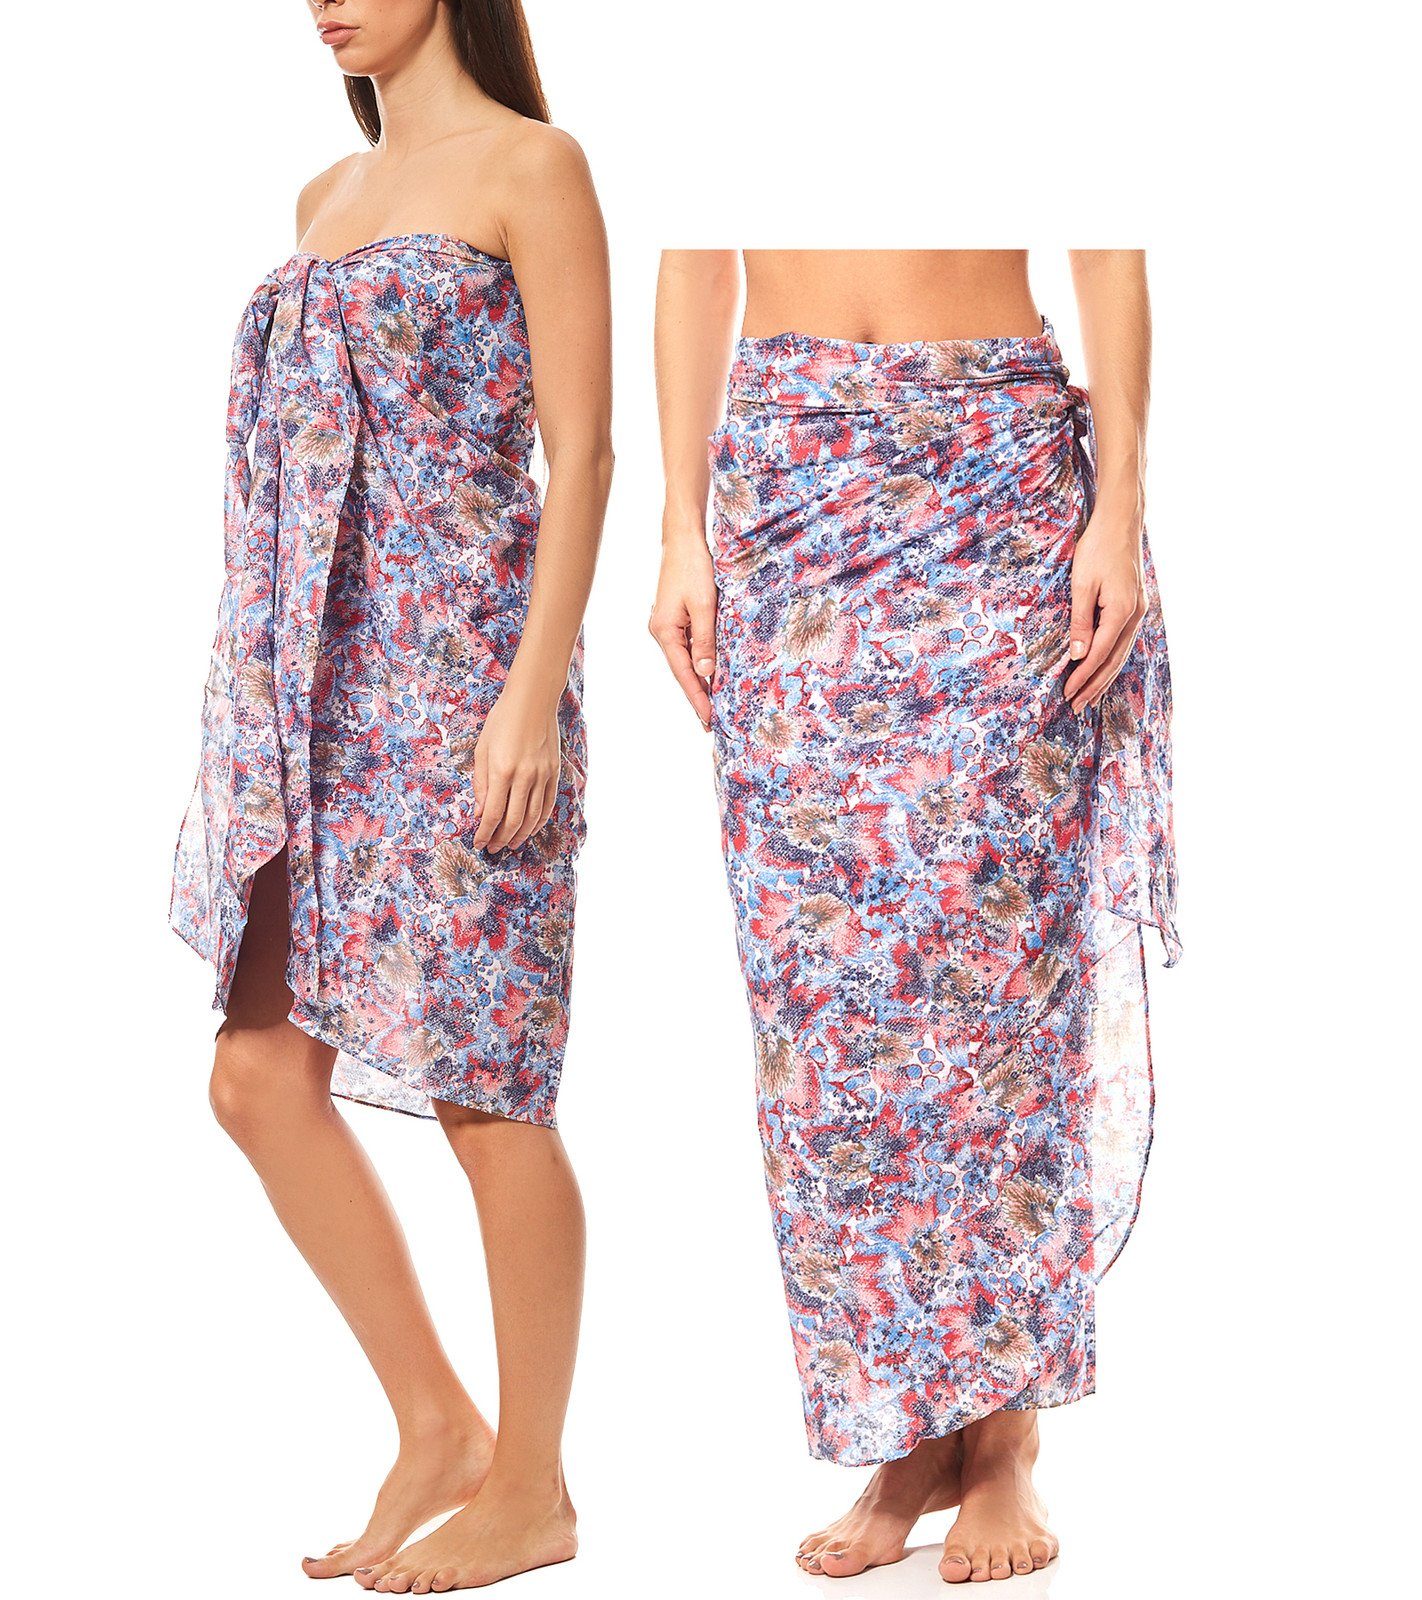 Maui Wowie Sommerkleid »MAUI WOWIE gemusterter Pareo Strandbekleidung  Strand-Kleid Rock Bademode Bunt« online kaufen | OTTO